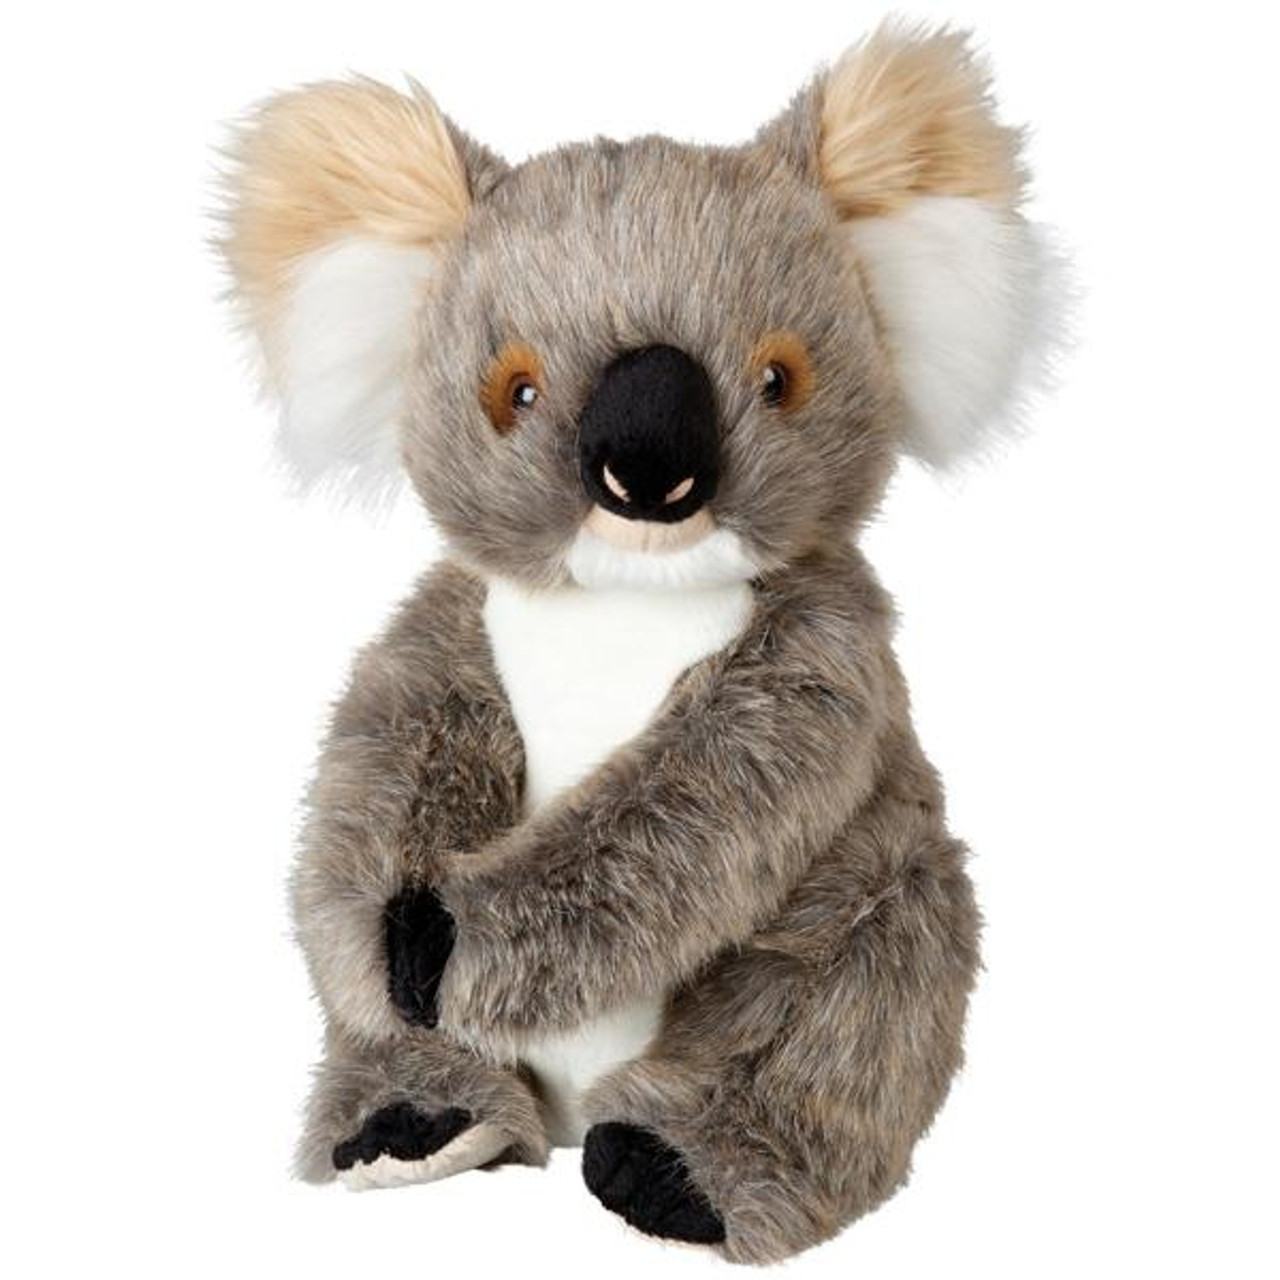 Koala Plush Toy, Adelaide